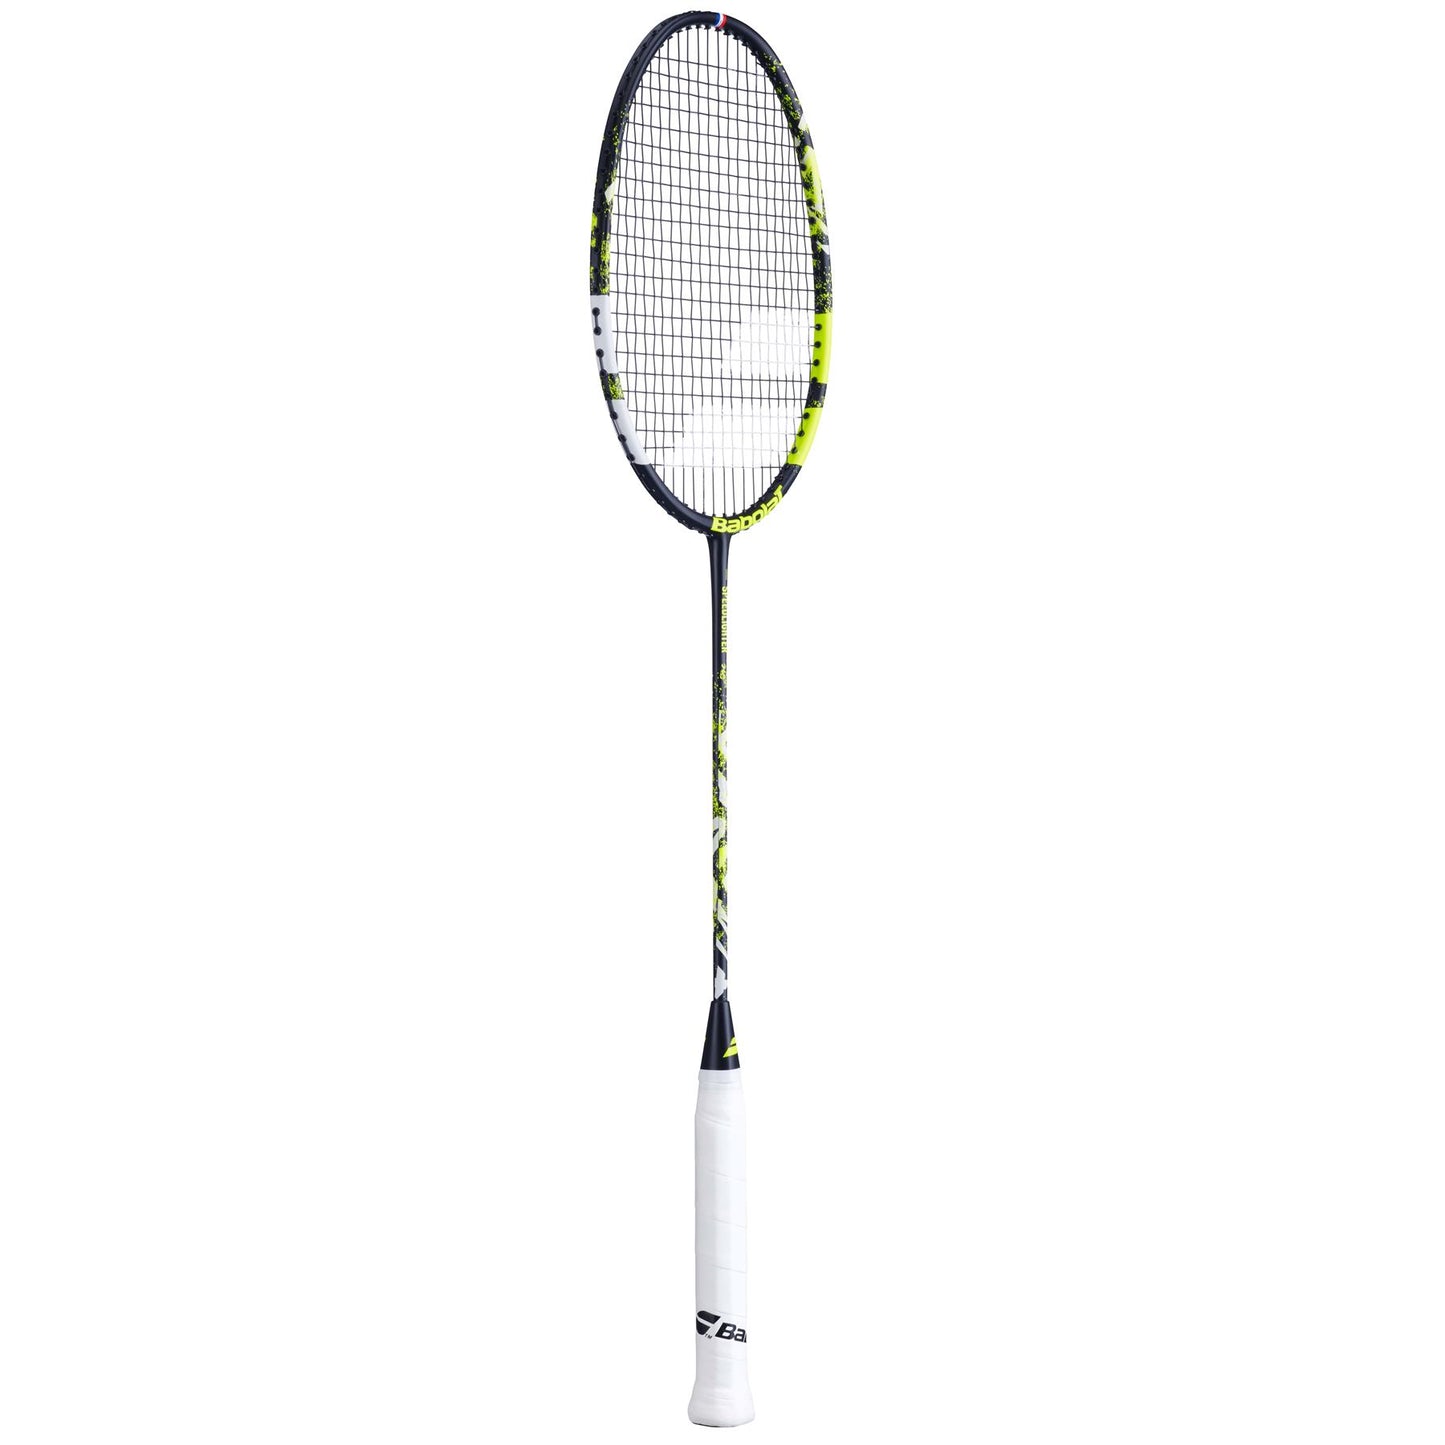 Babolat Speedlighter Junior Badminton Racket - Black / Green - Right